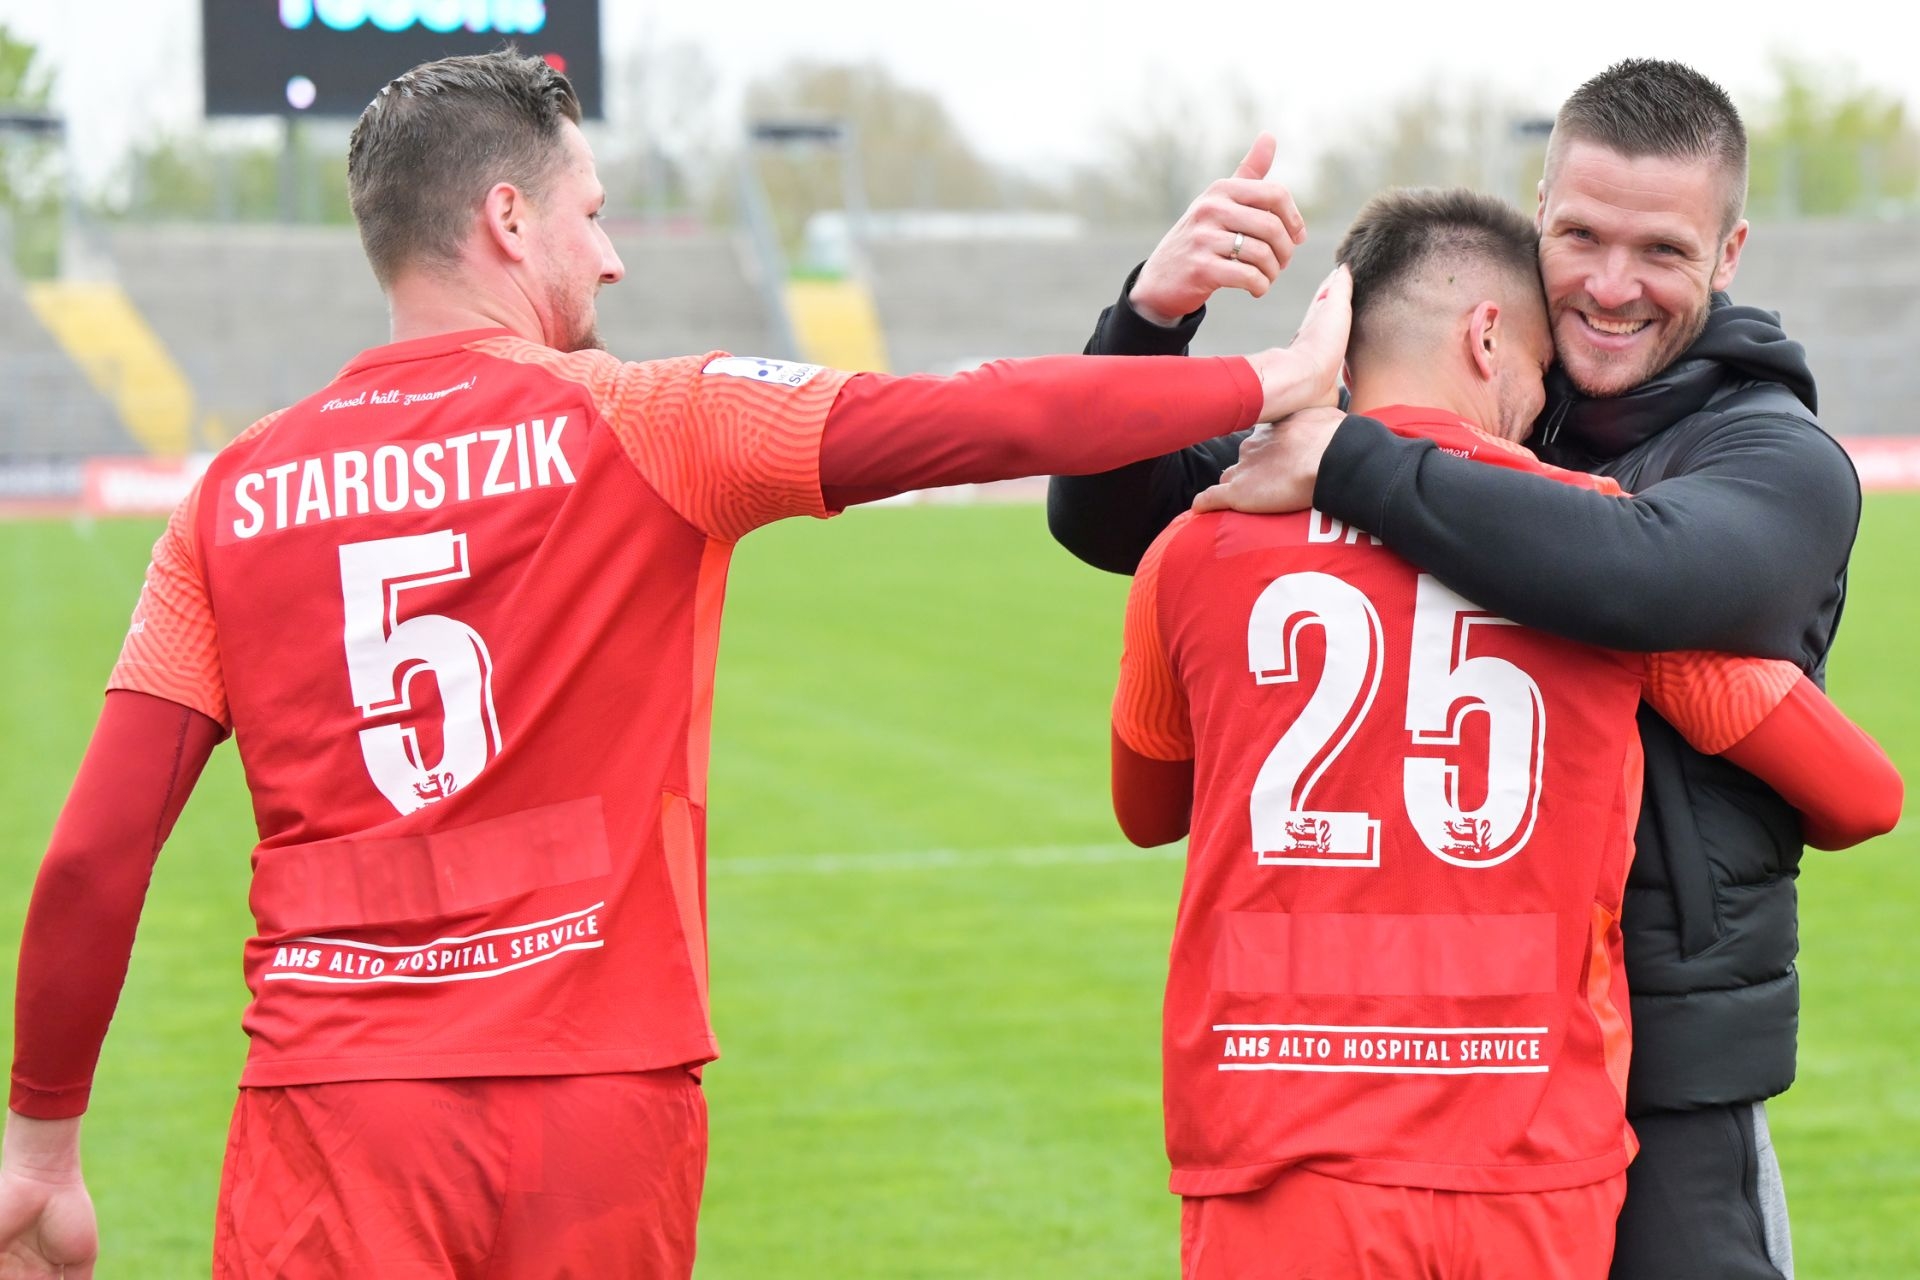 Regionalliga Südwest, Saison 2021/22, KSV Hessen Kassel, TSG Balingen, Endstand 4:0, Jubel zum 3:0